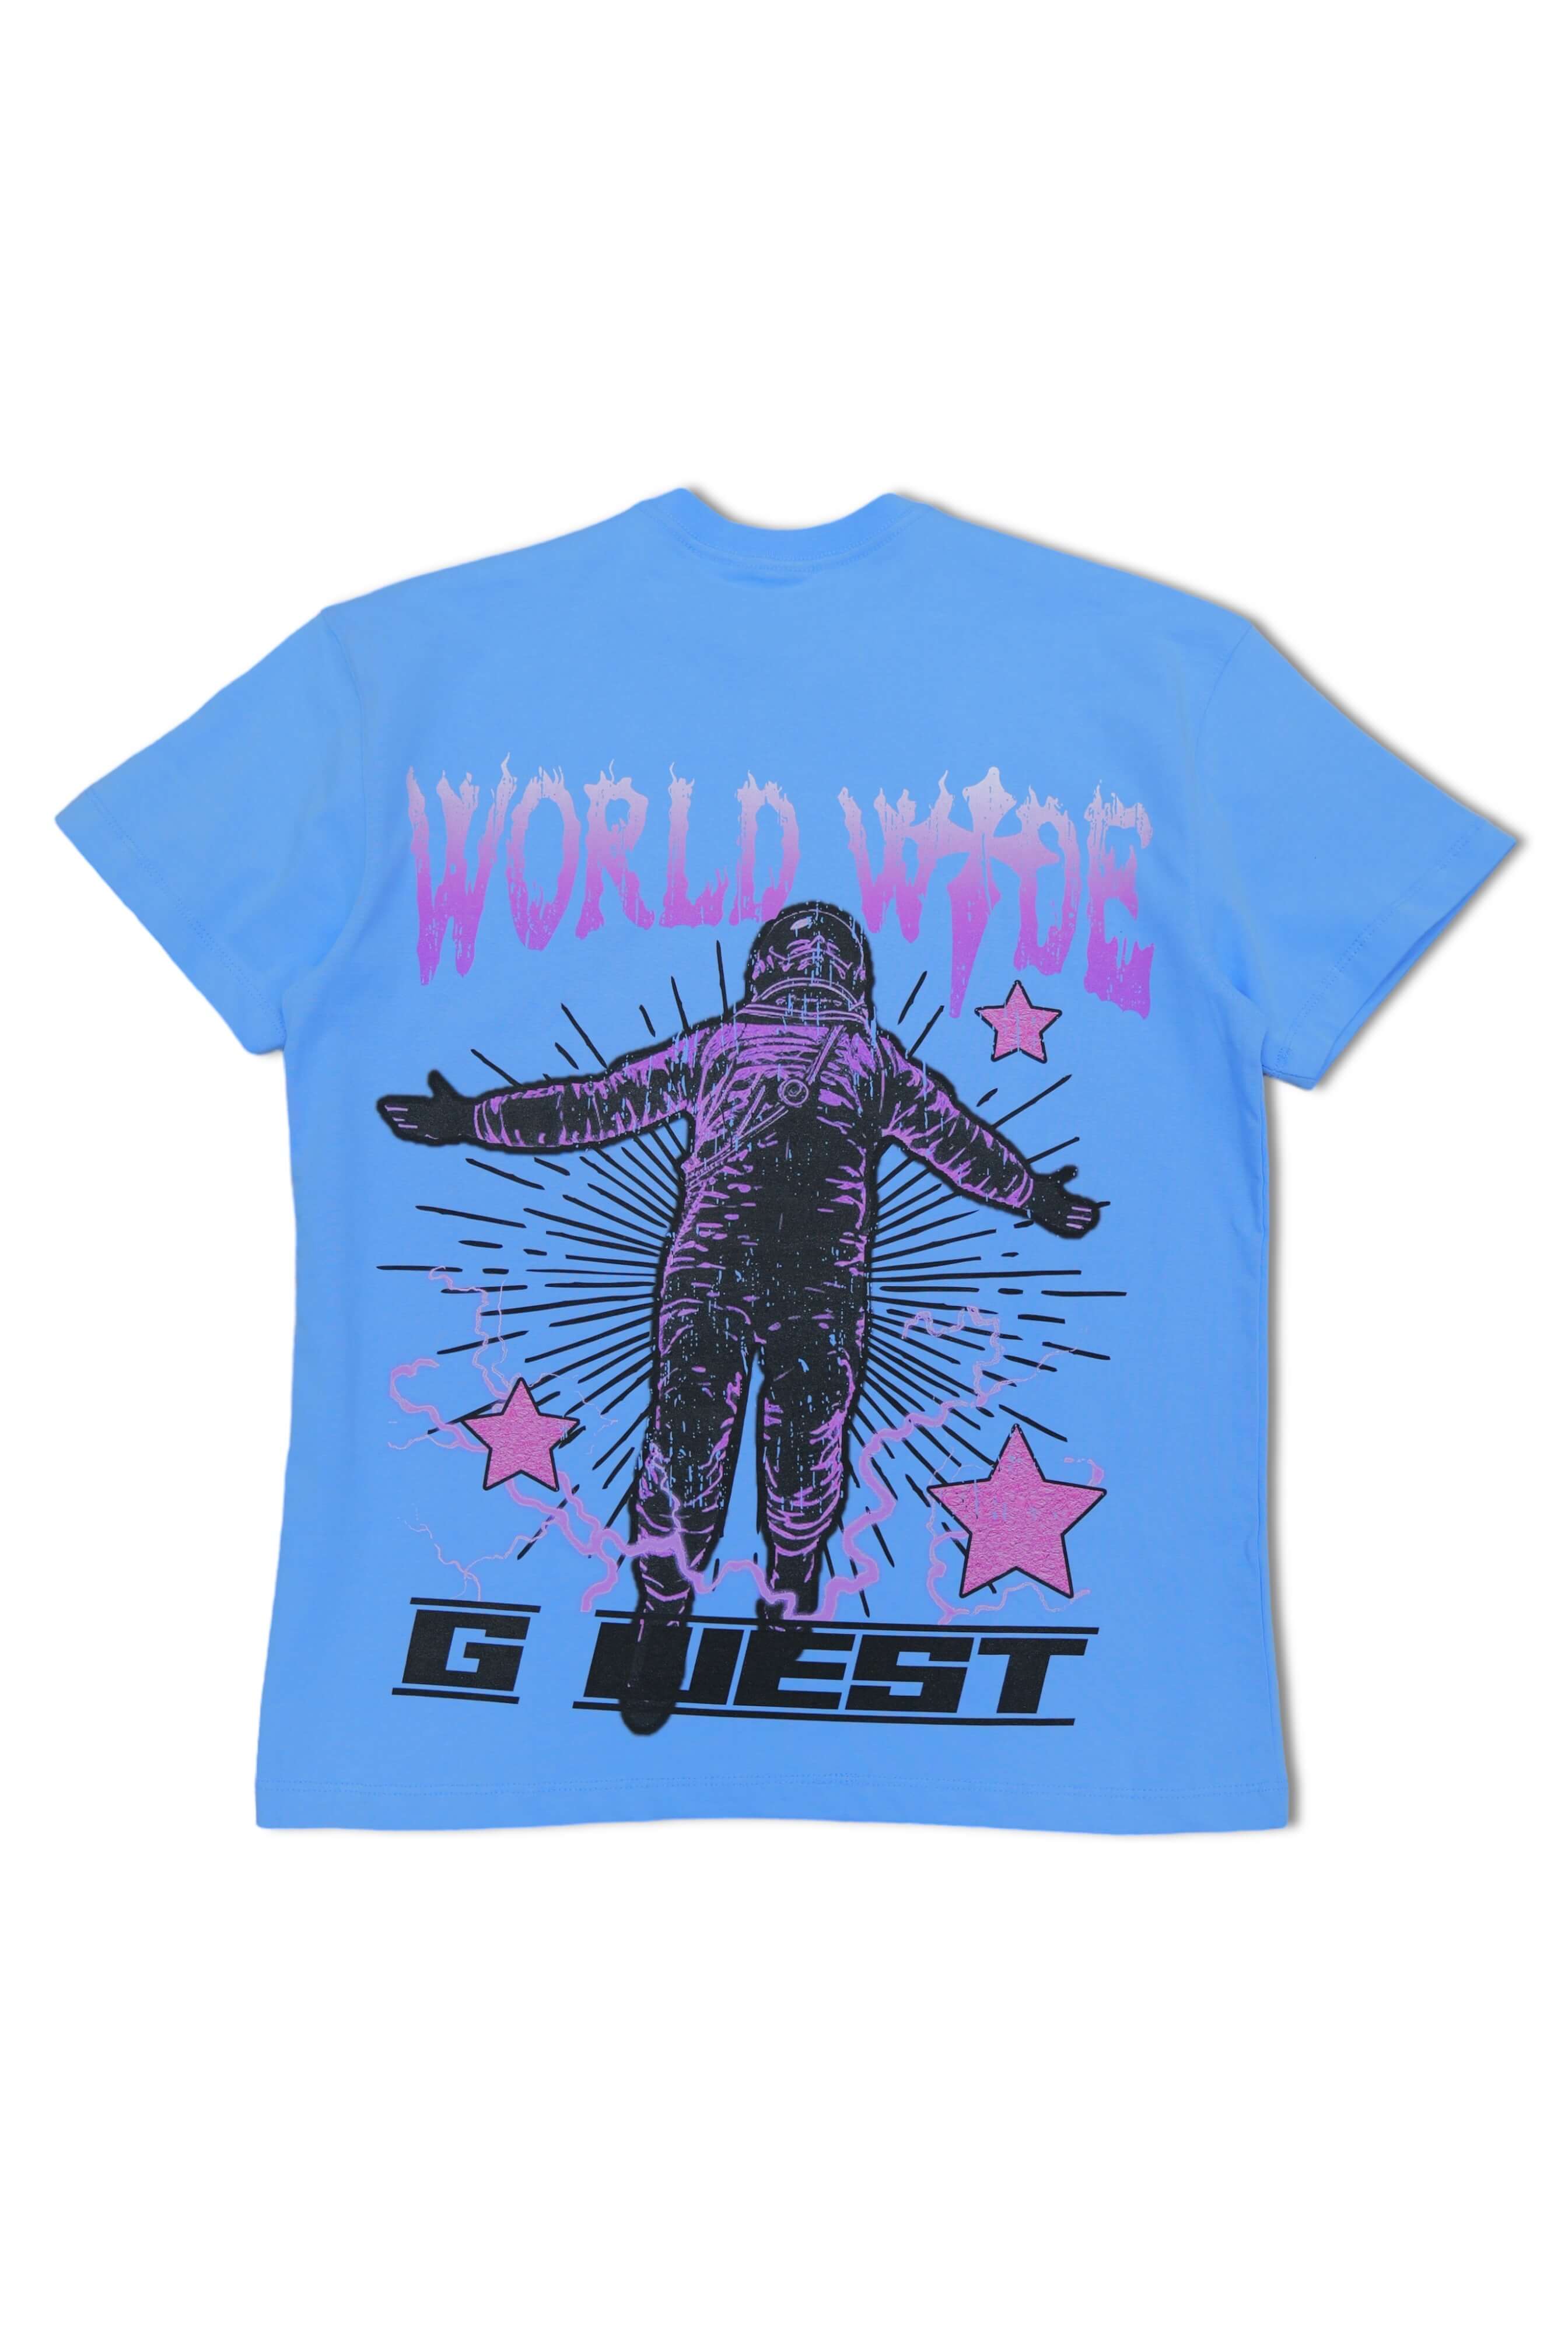 G West World Wide Star Astronaut T-shirt -University Blue